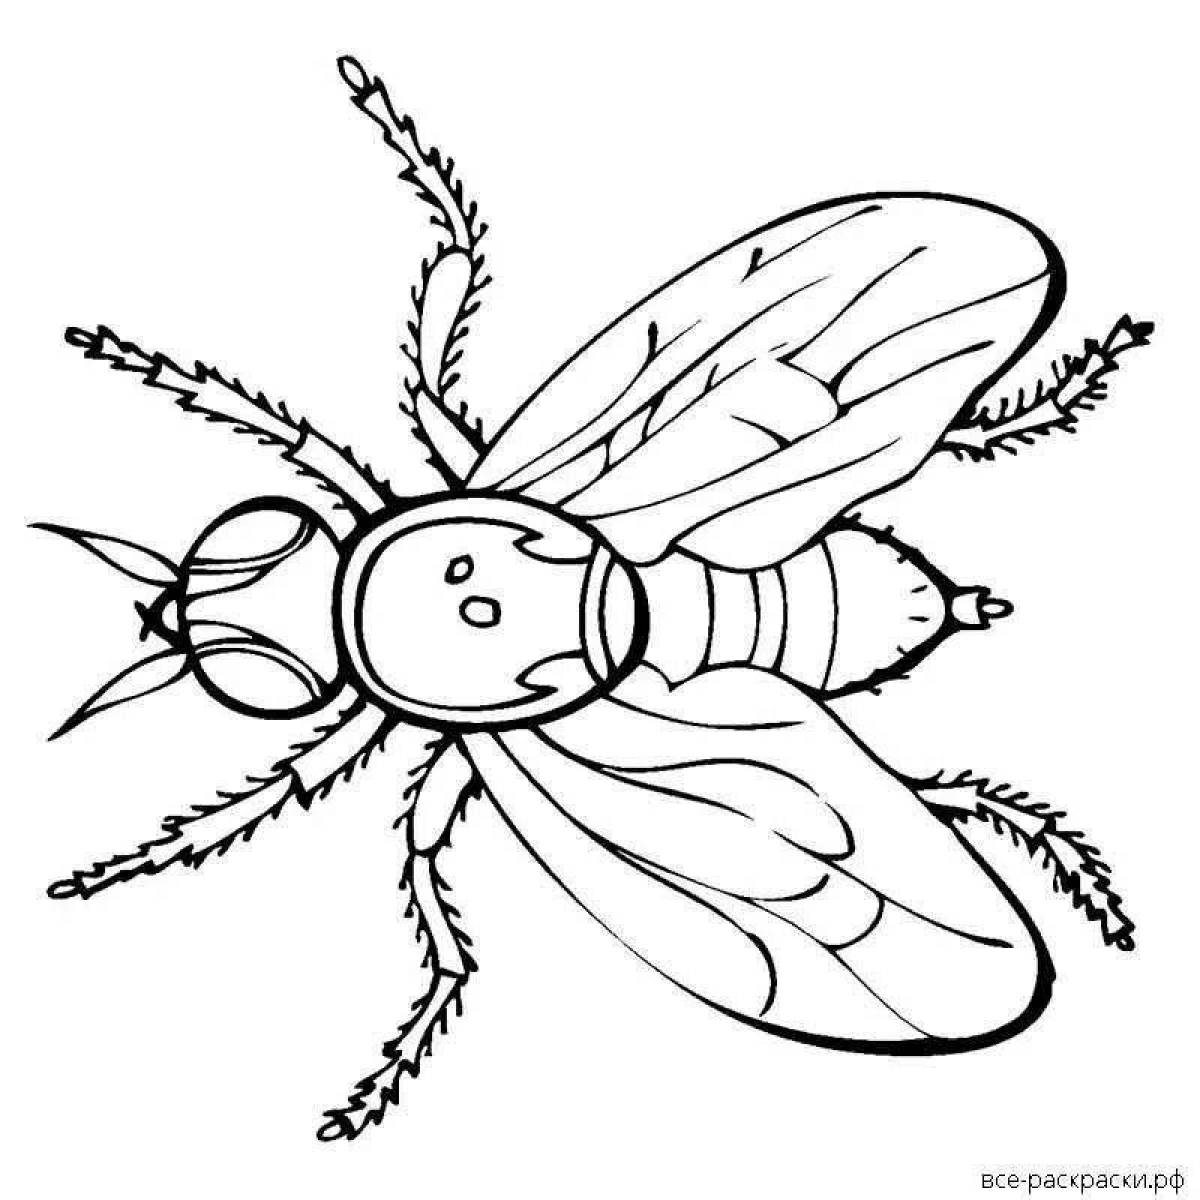 Анимированная страница раскраски мух для детей